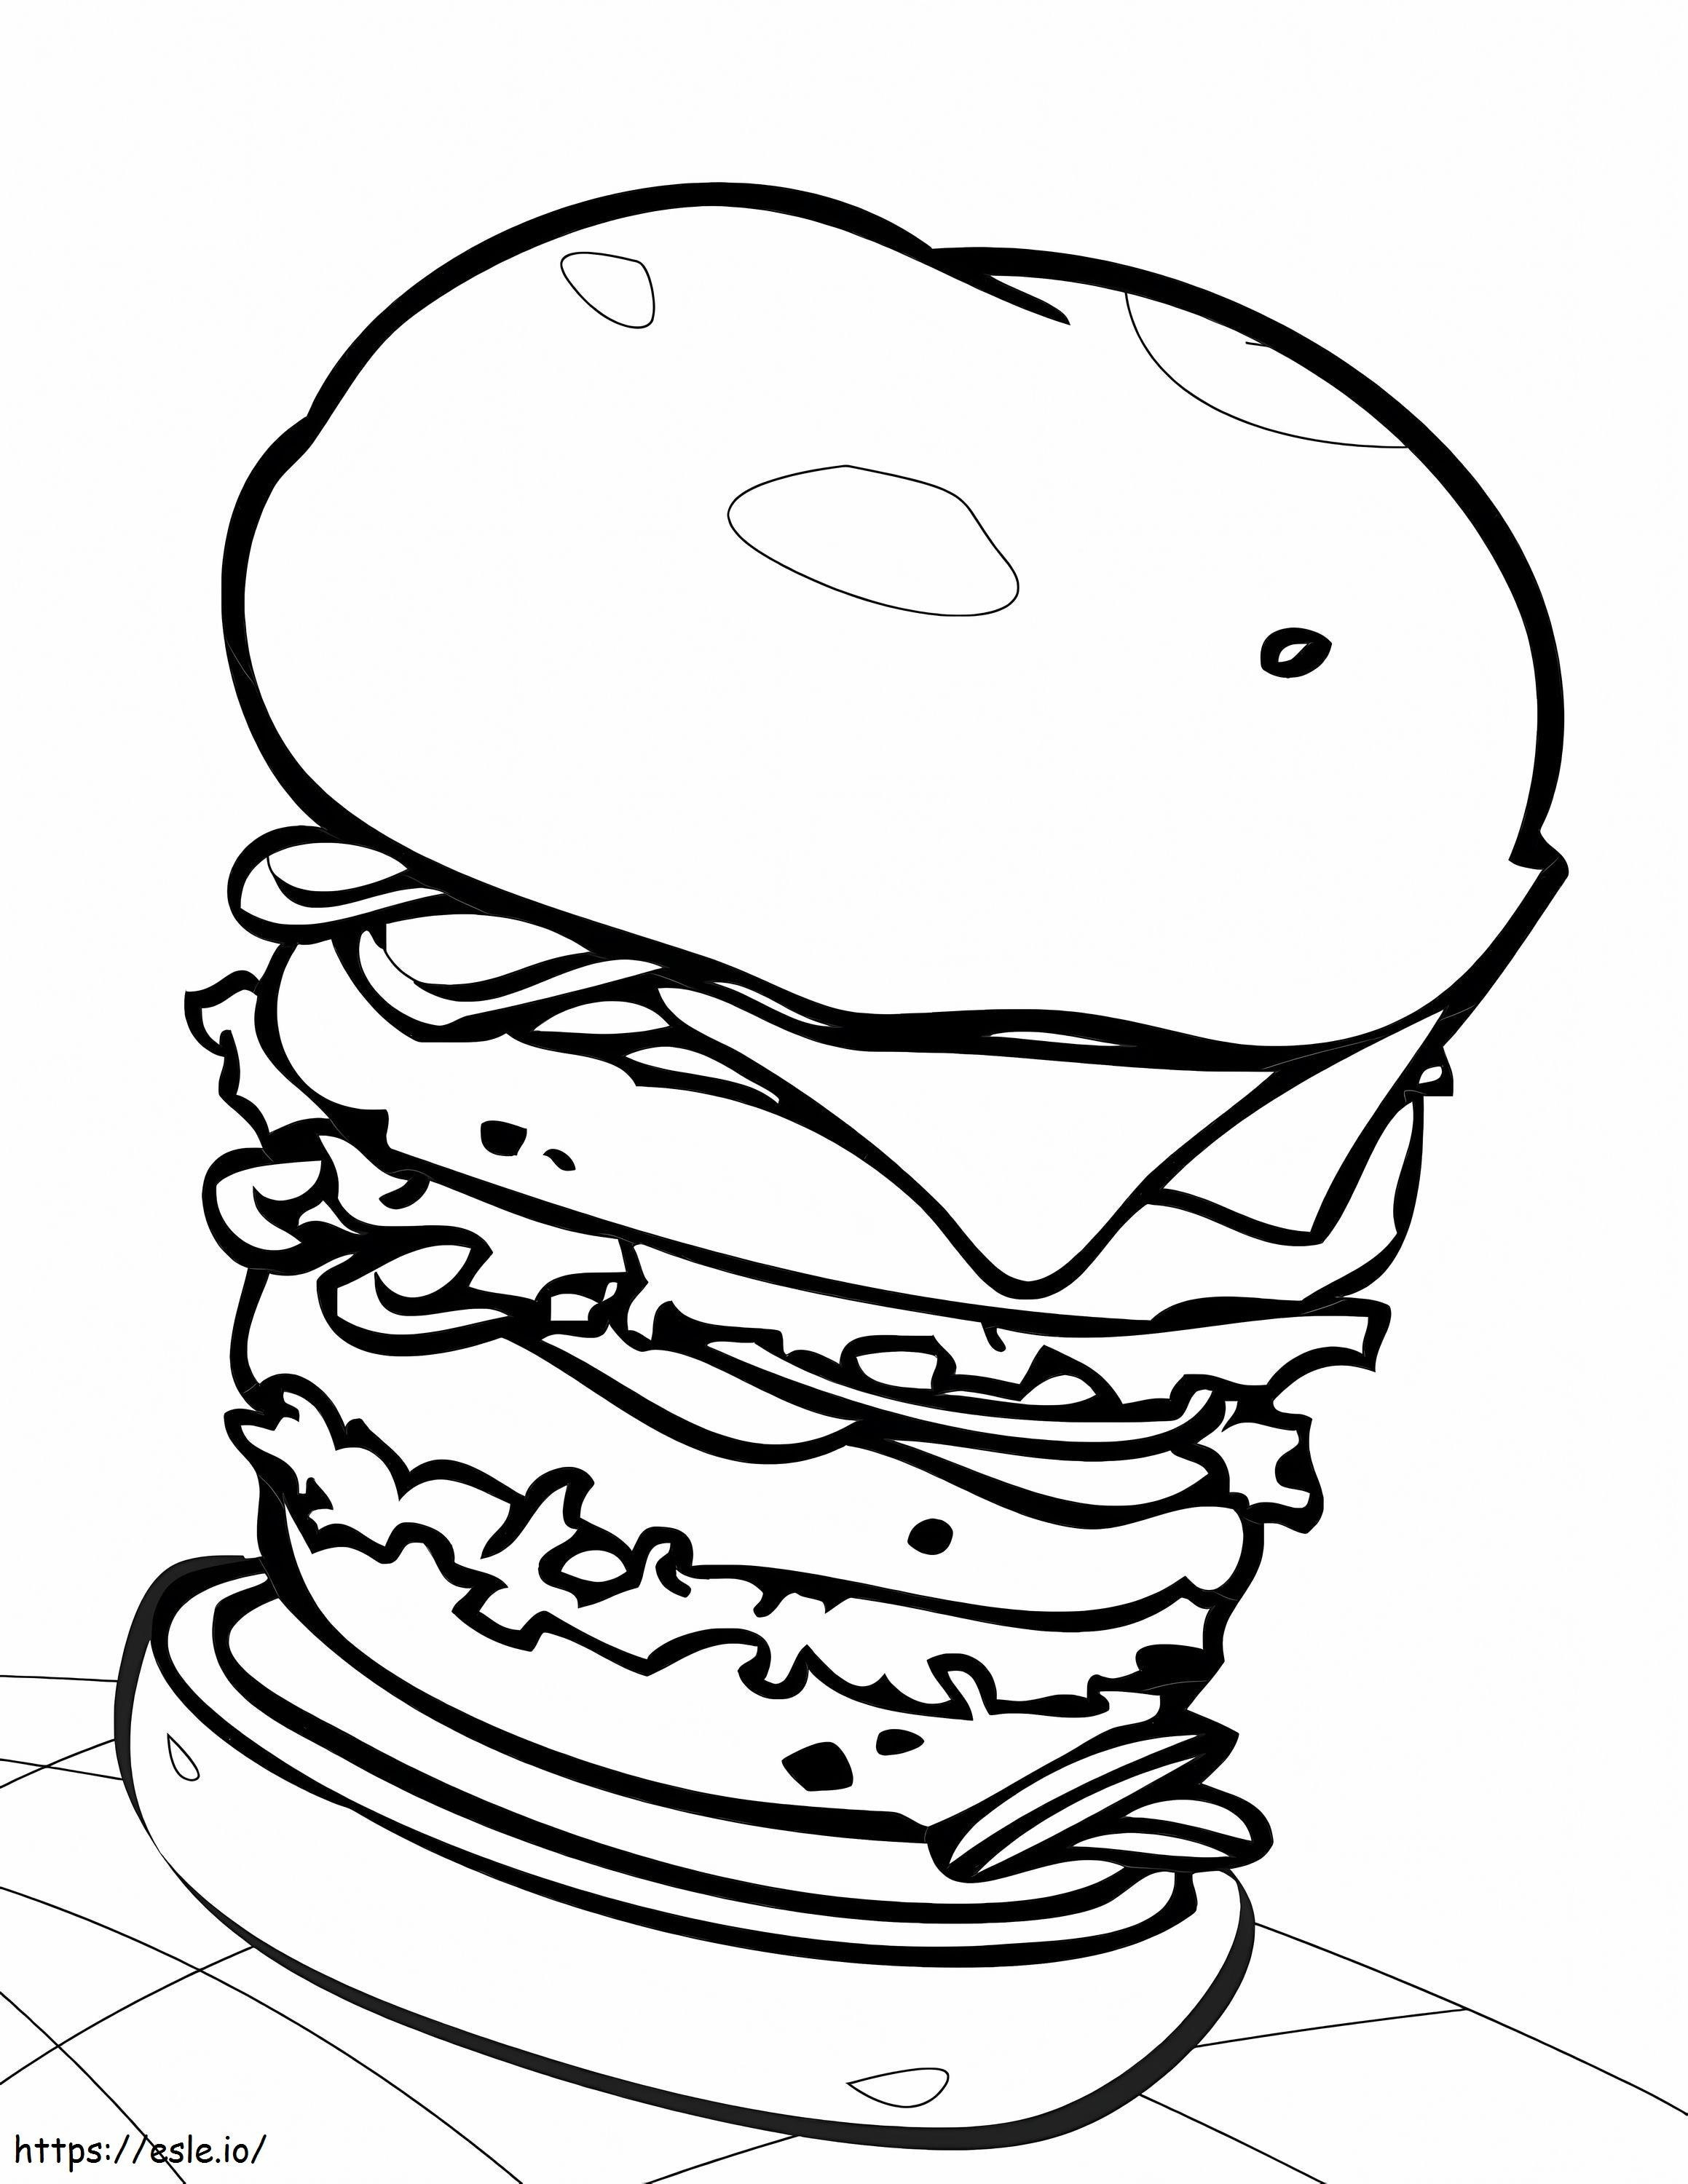 Coloriage Gros hamburger à imprimer dessin